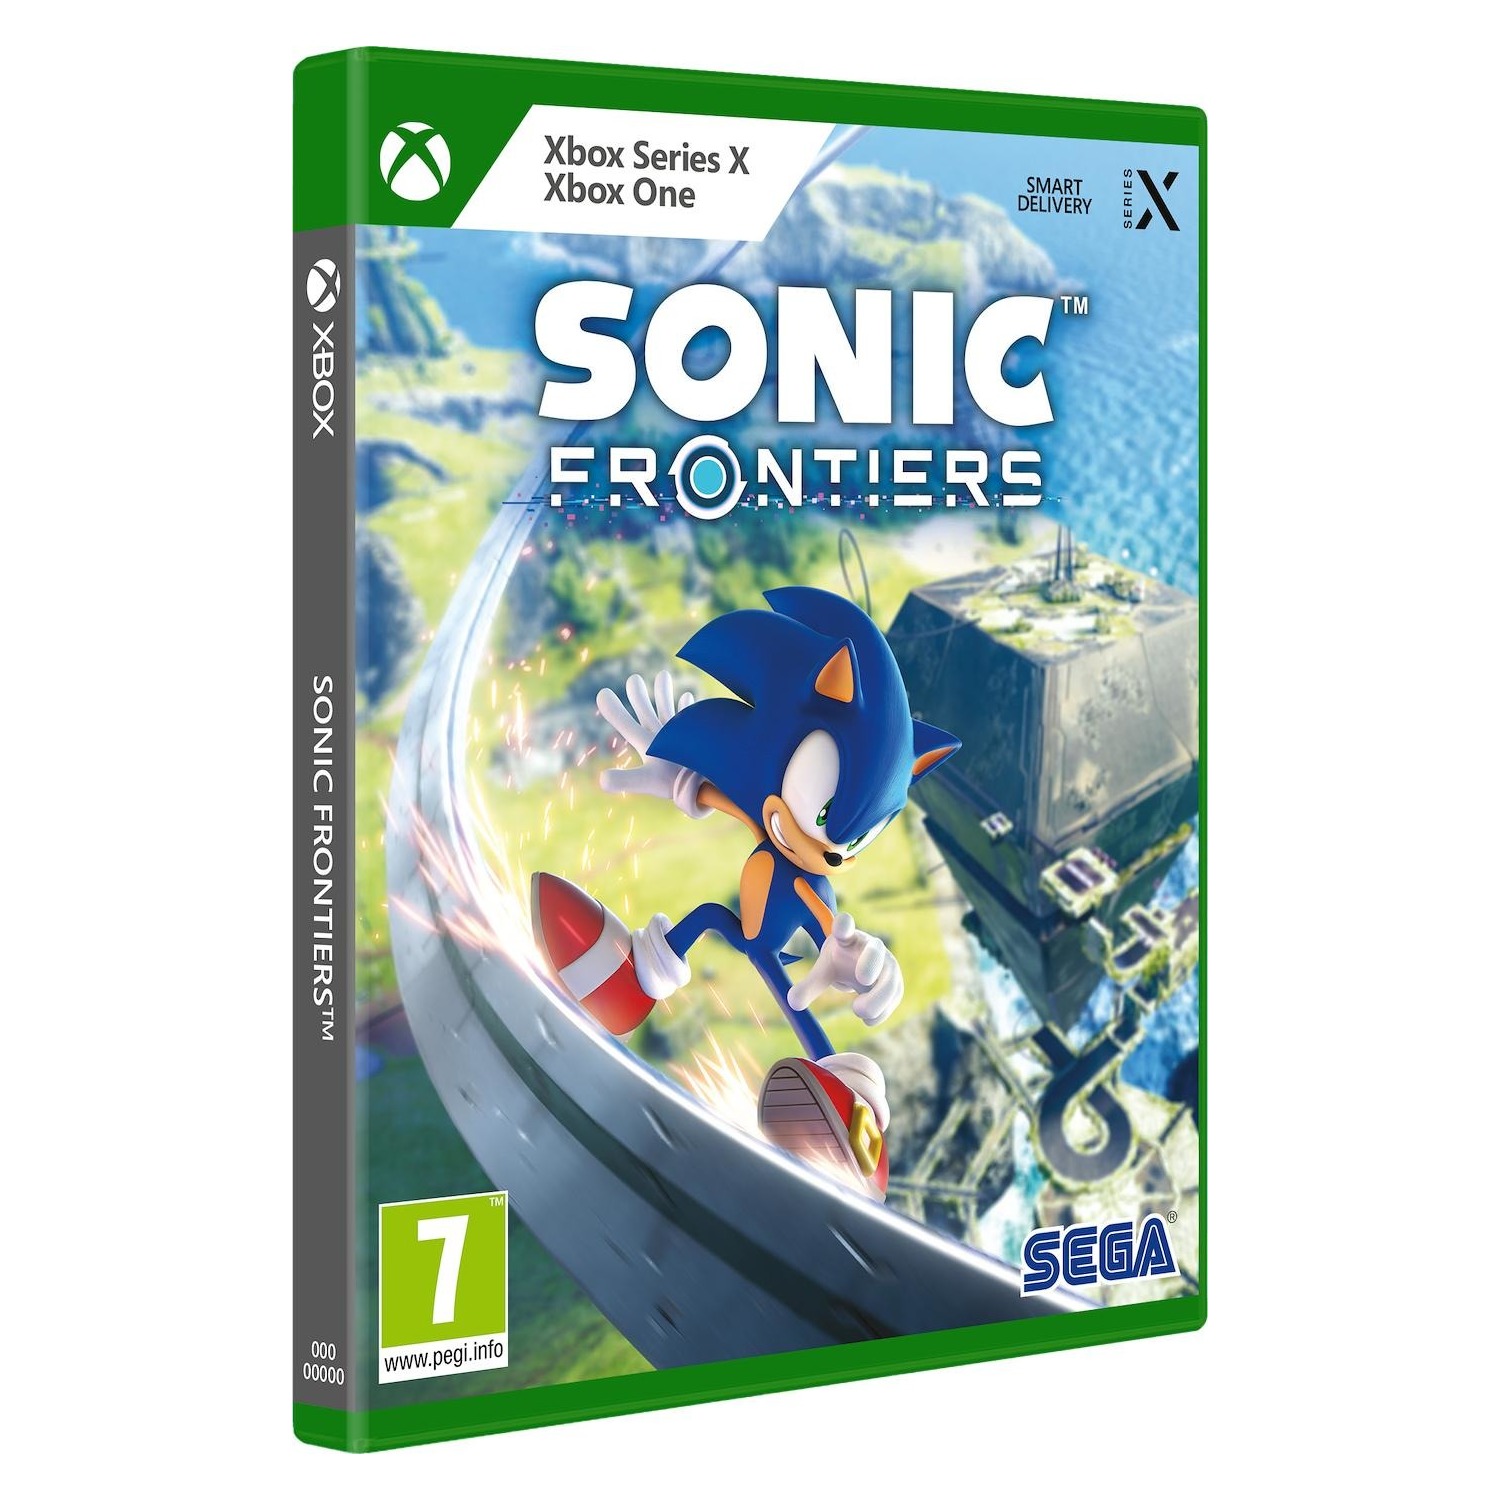 Immagine per Gioco XONE/Series X Sonic Frontiers da DIMOStore